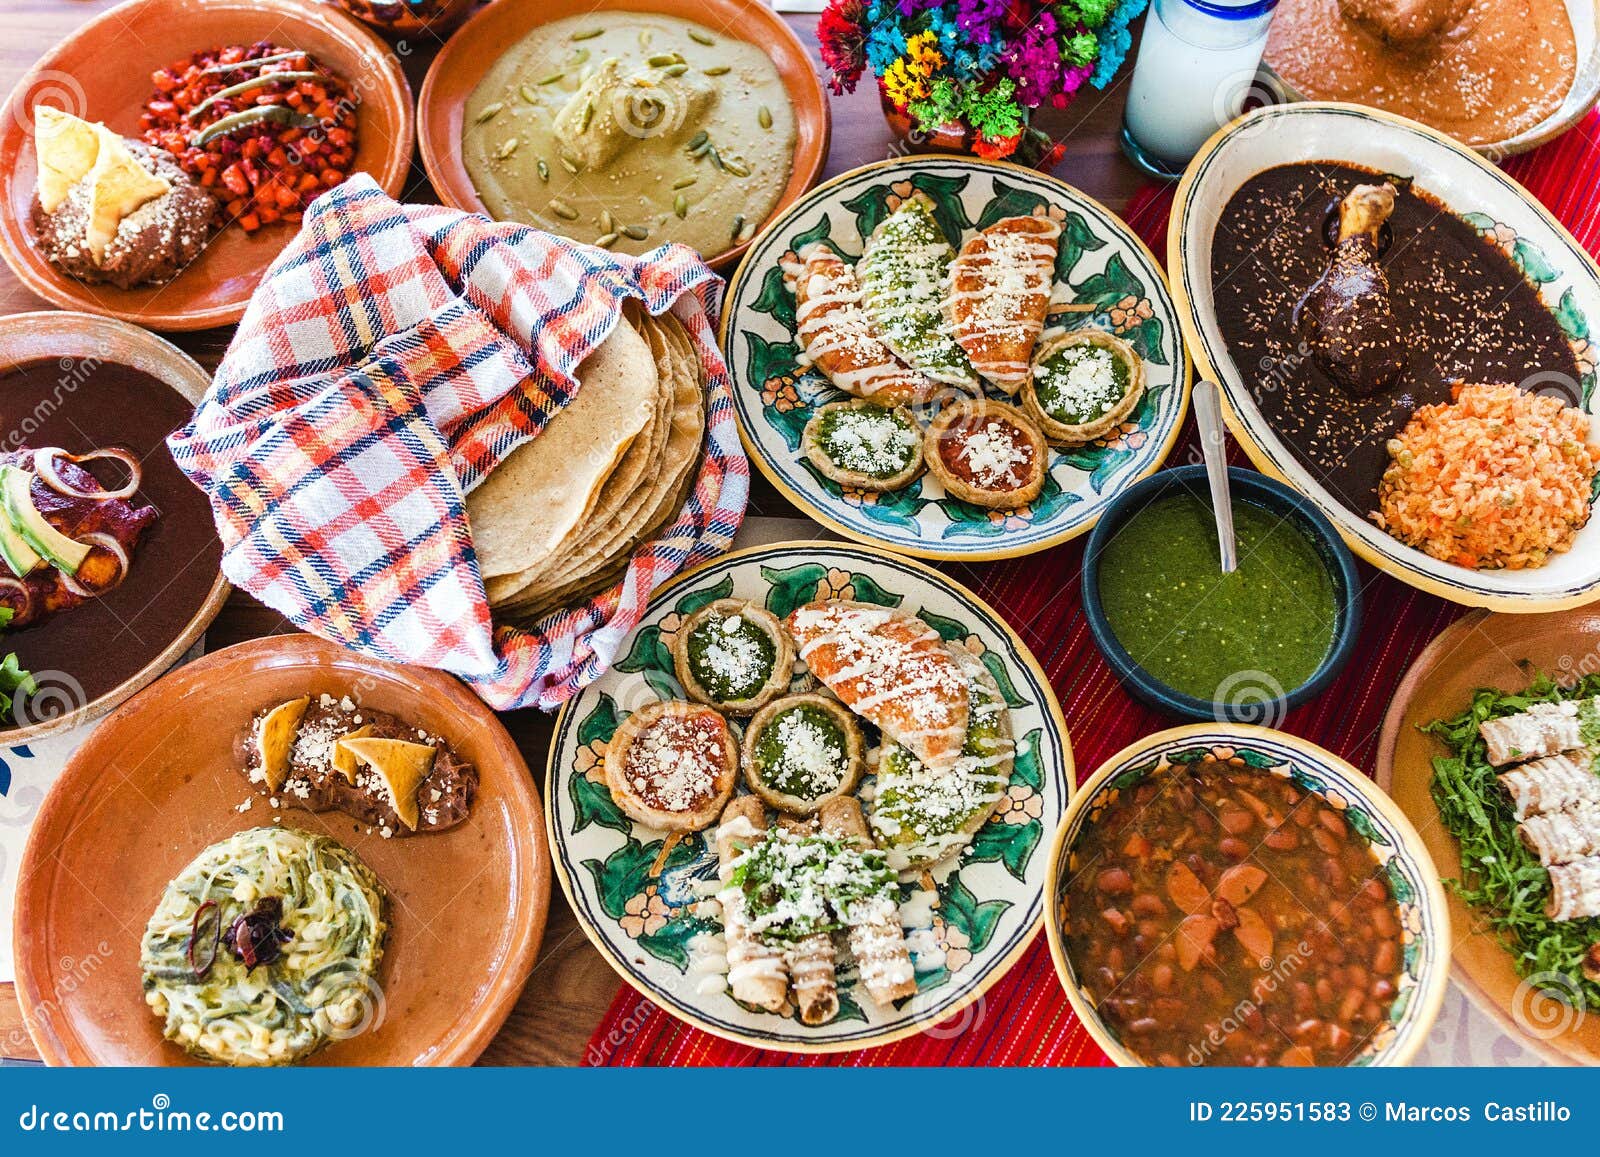 这些经典墨西哥风味美食，你都尝过了吗? - 里维埃拉玛雅